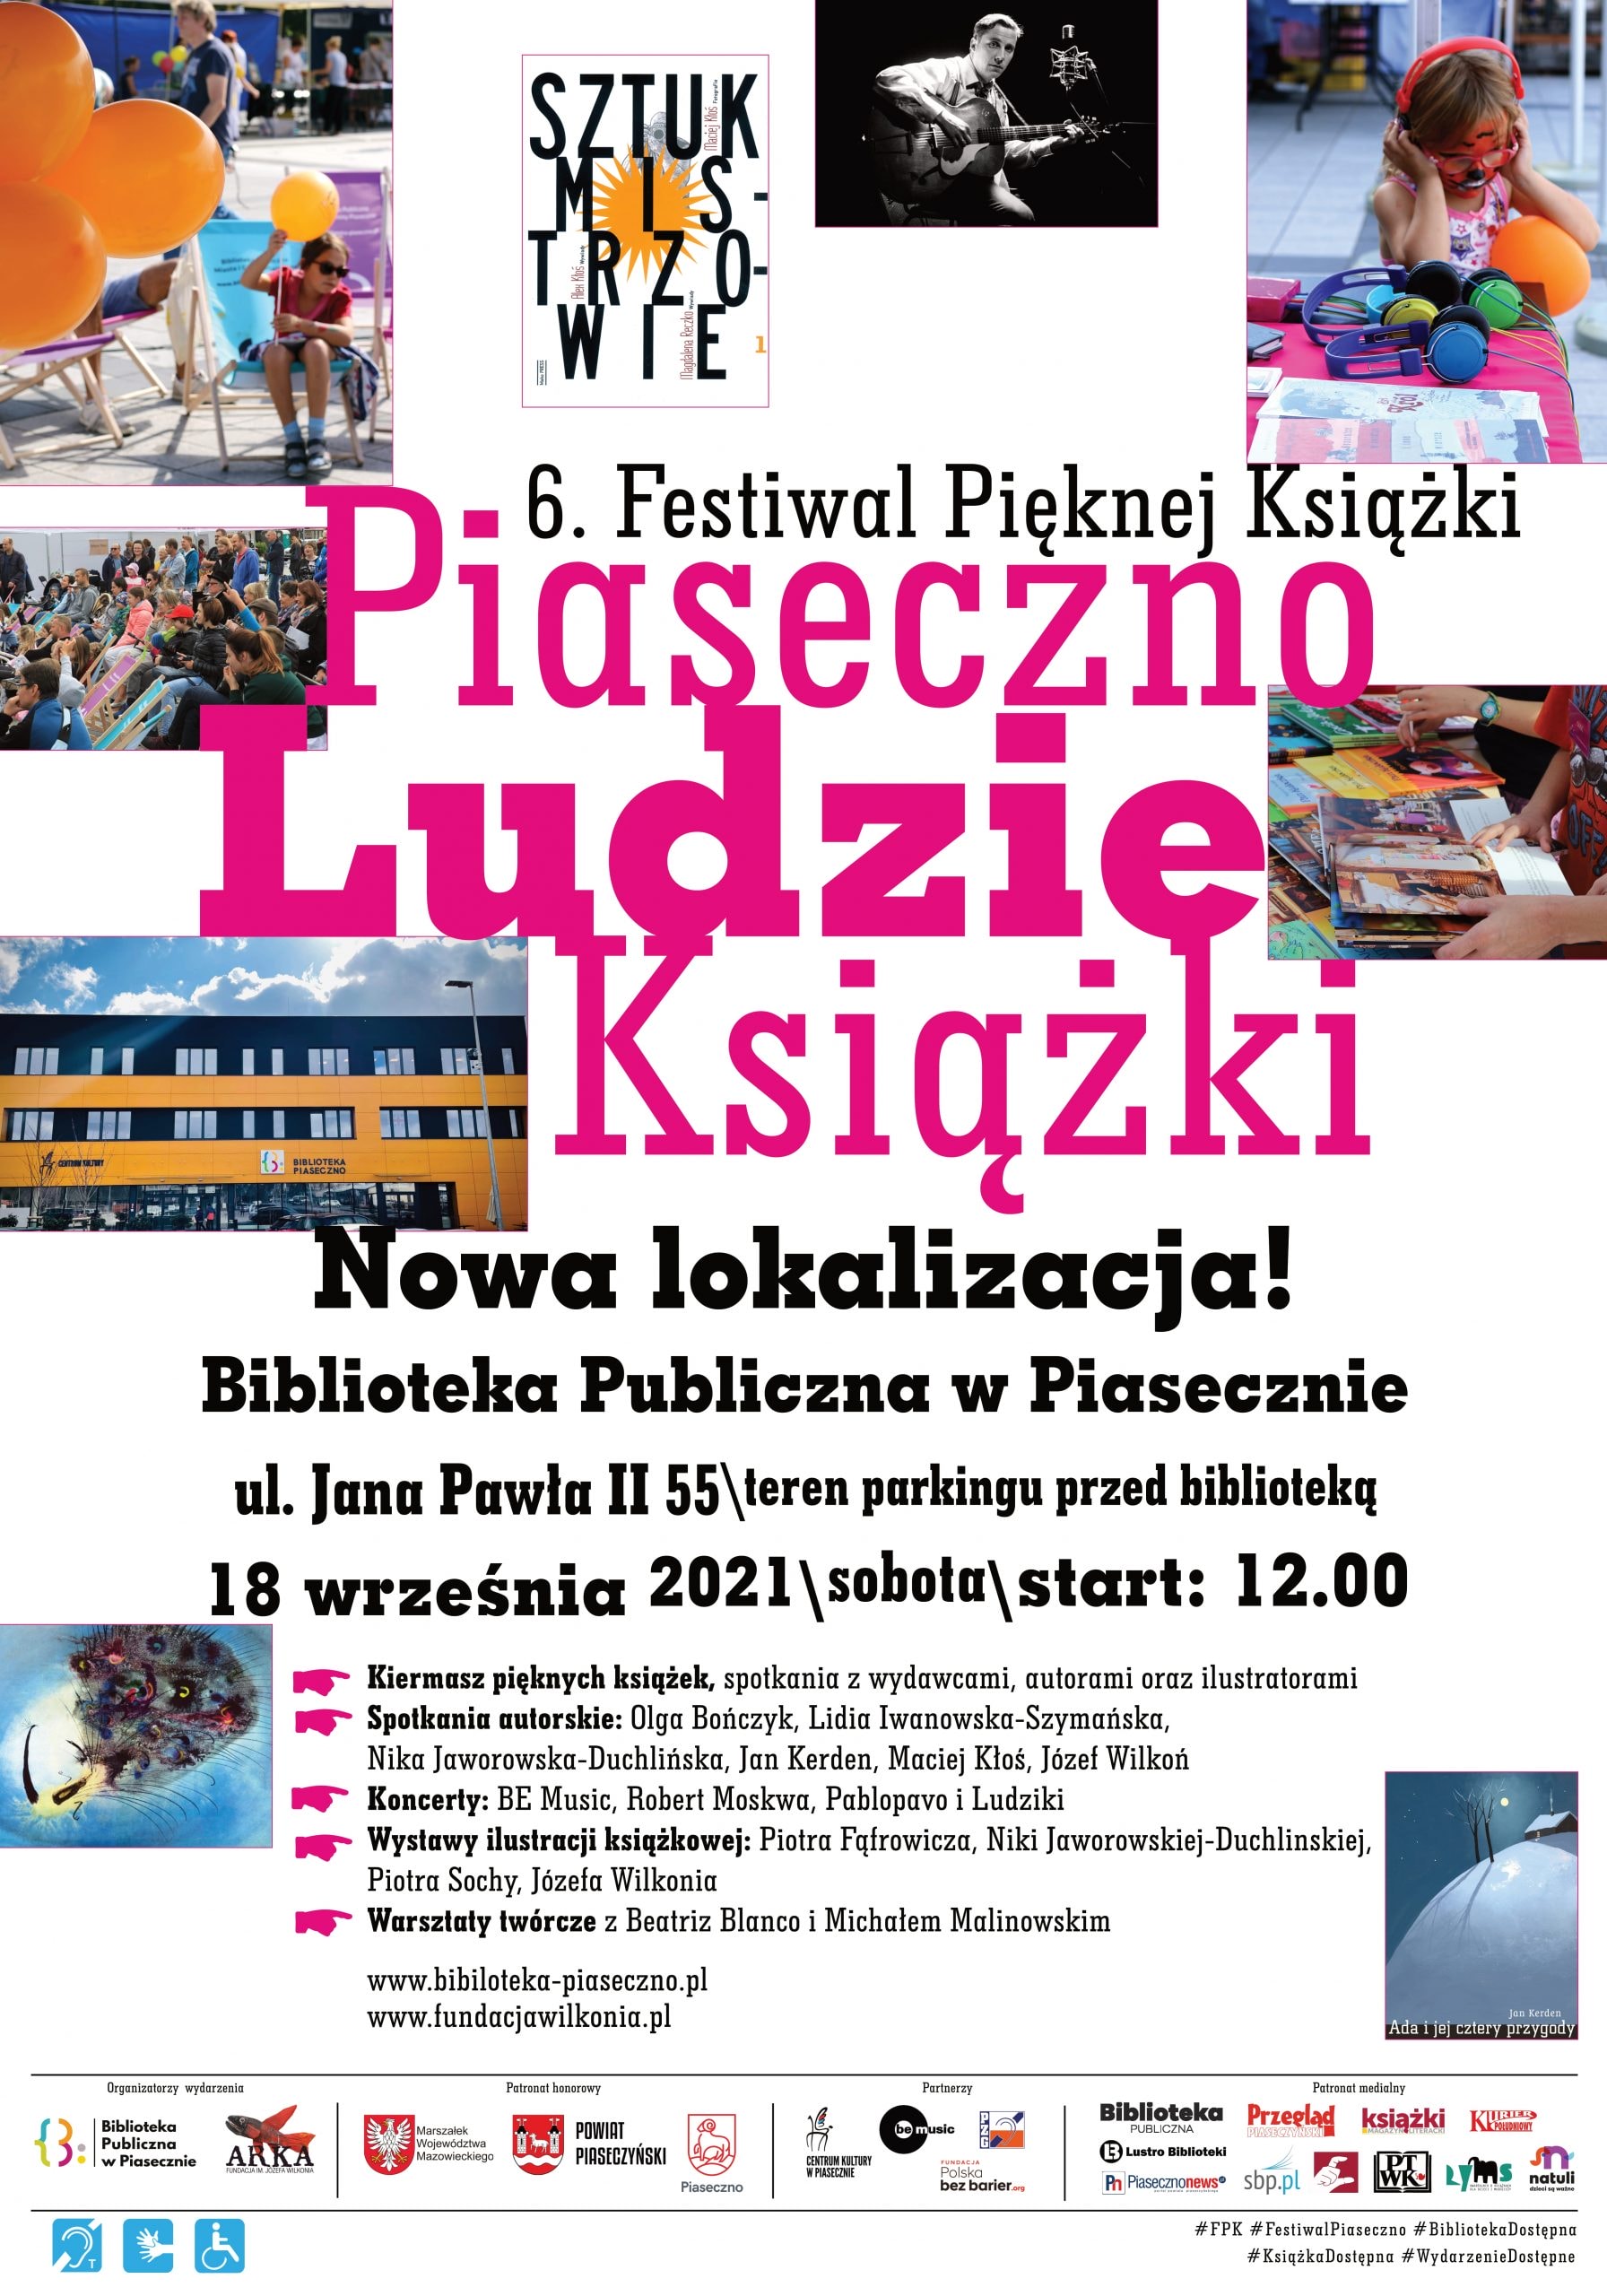 6.Festiwal Pięknej Książki W Piasecznie - plakat informacyjny